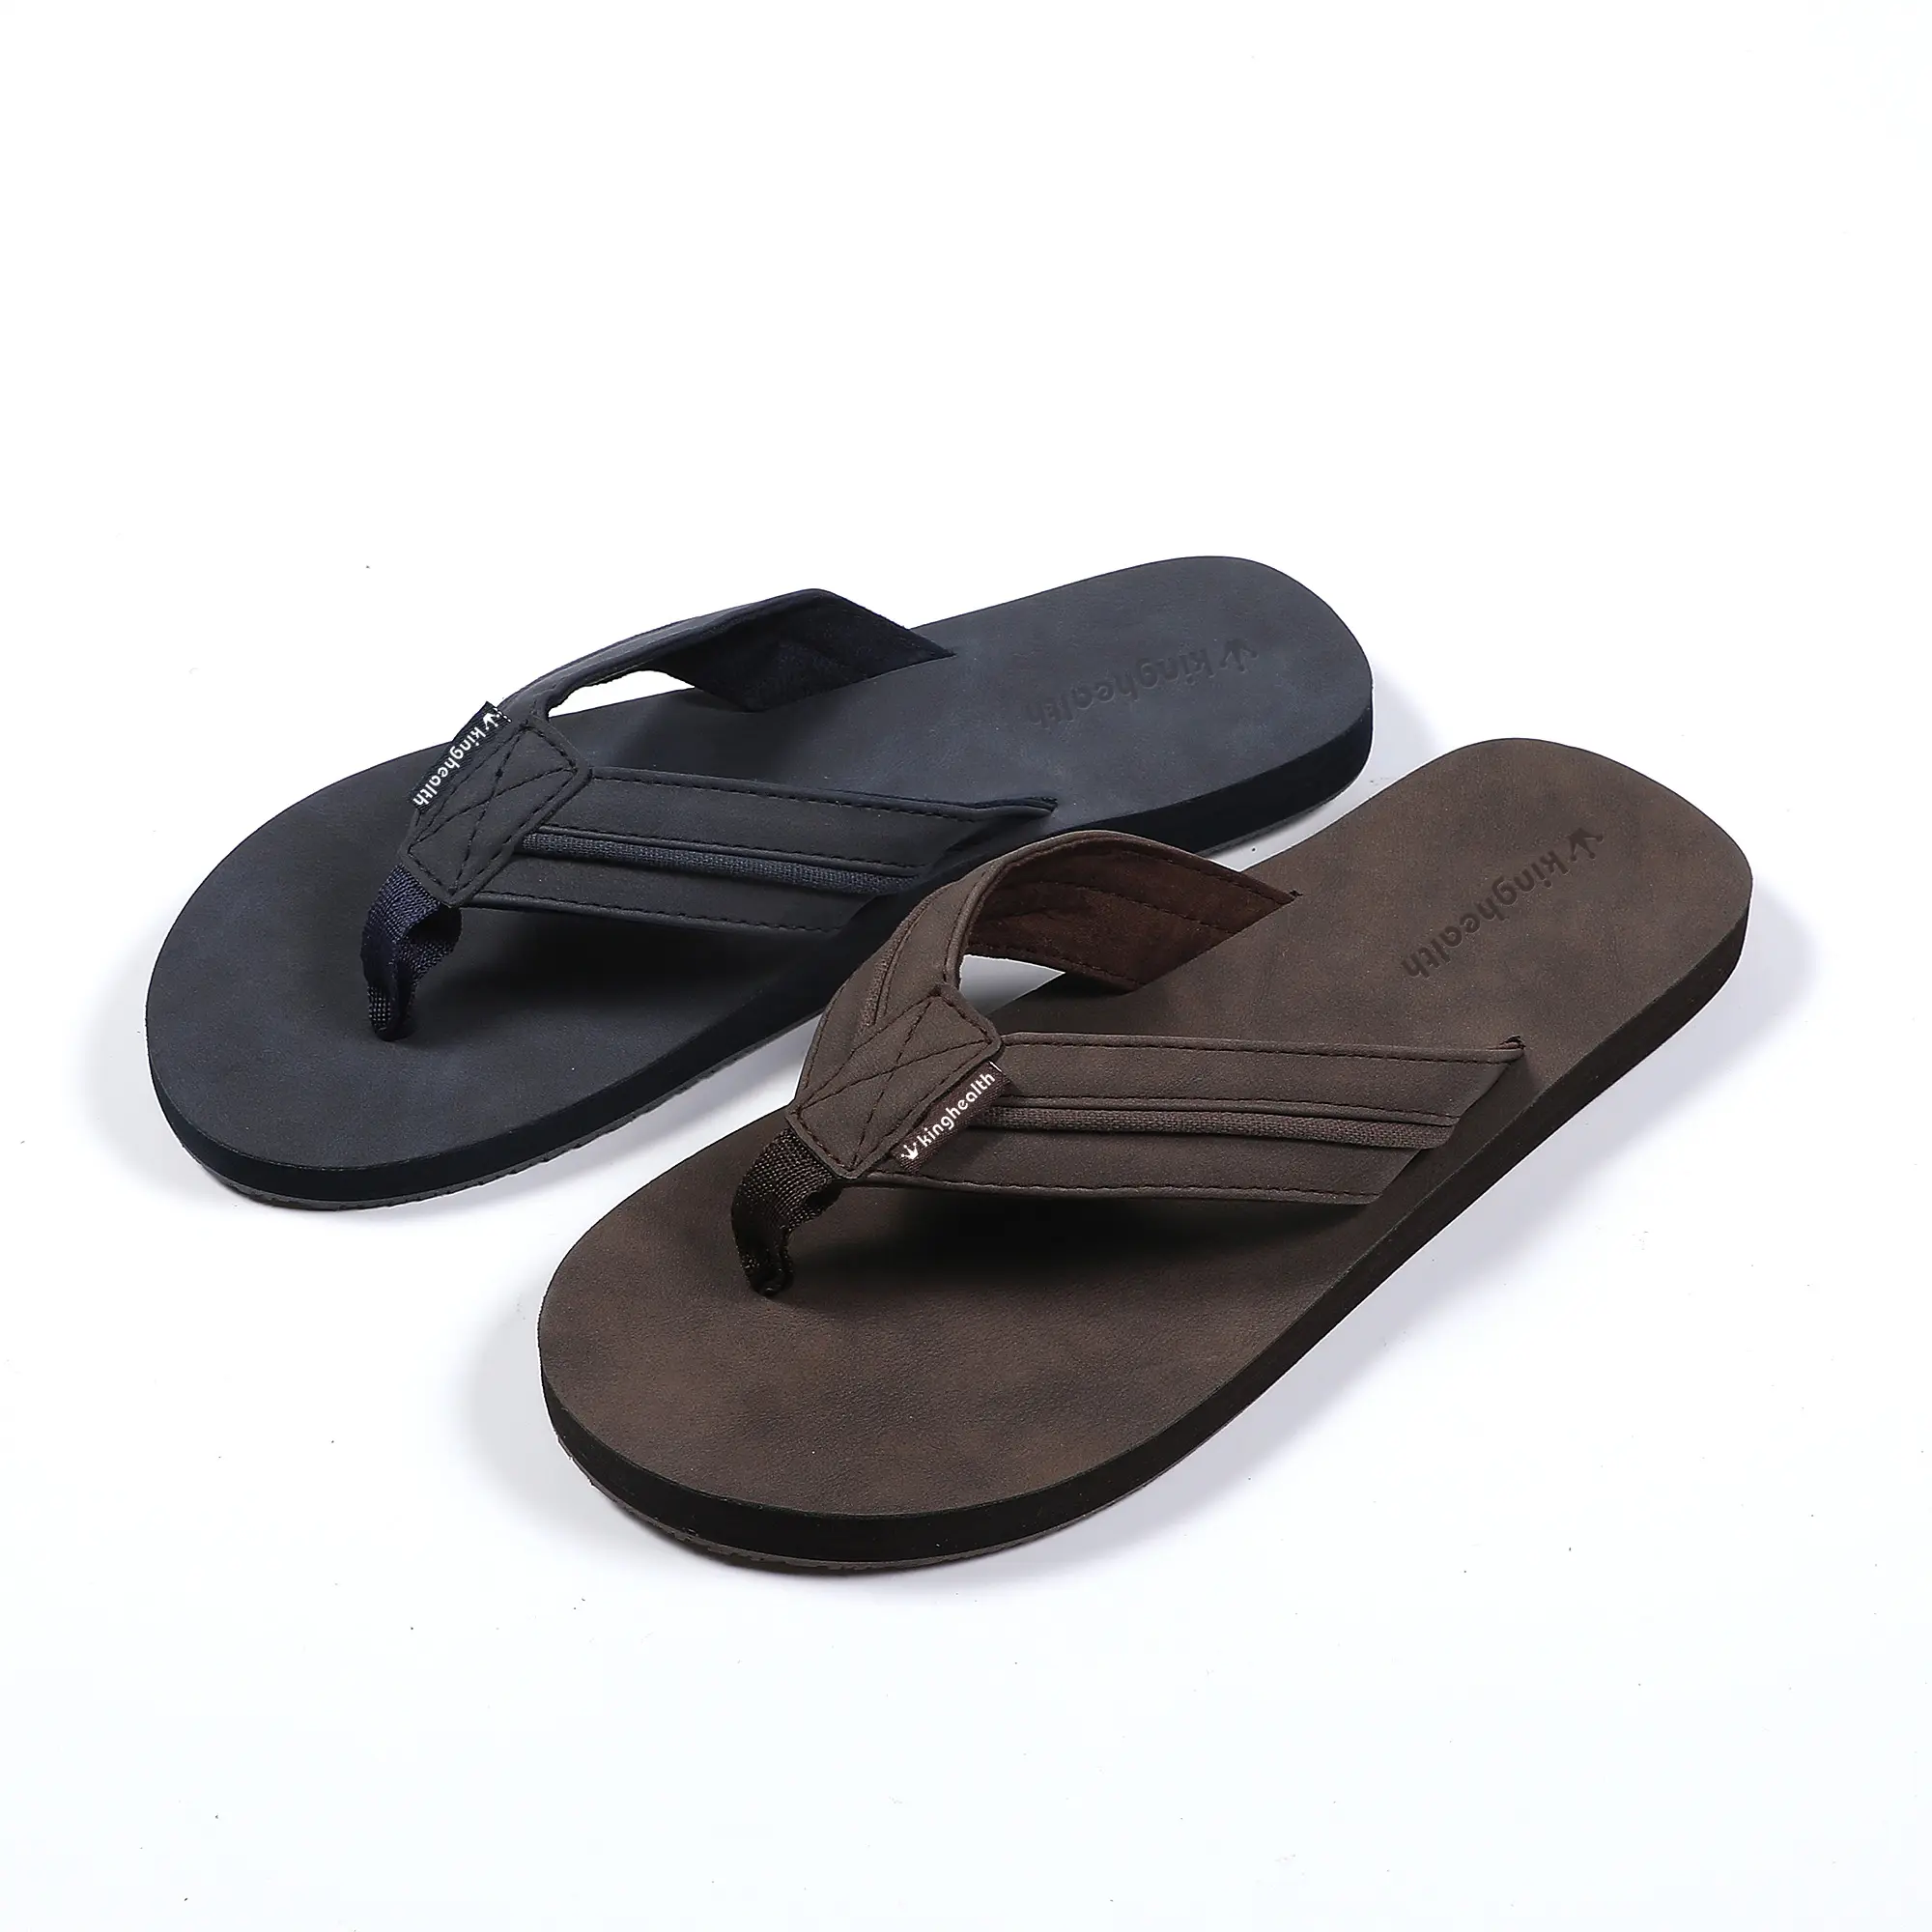 Wholesale men's fashion outdoor slides summer open toe non slip slippers custom logo soft eva sandals flip flops for man